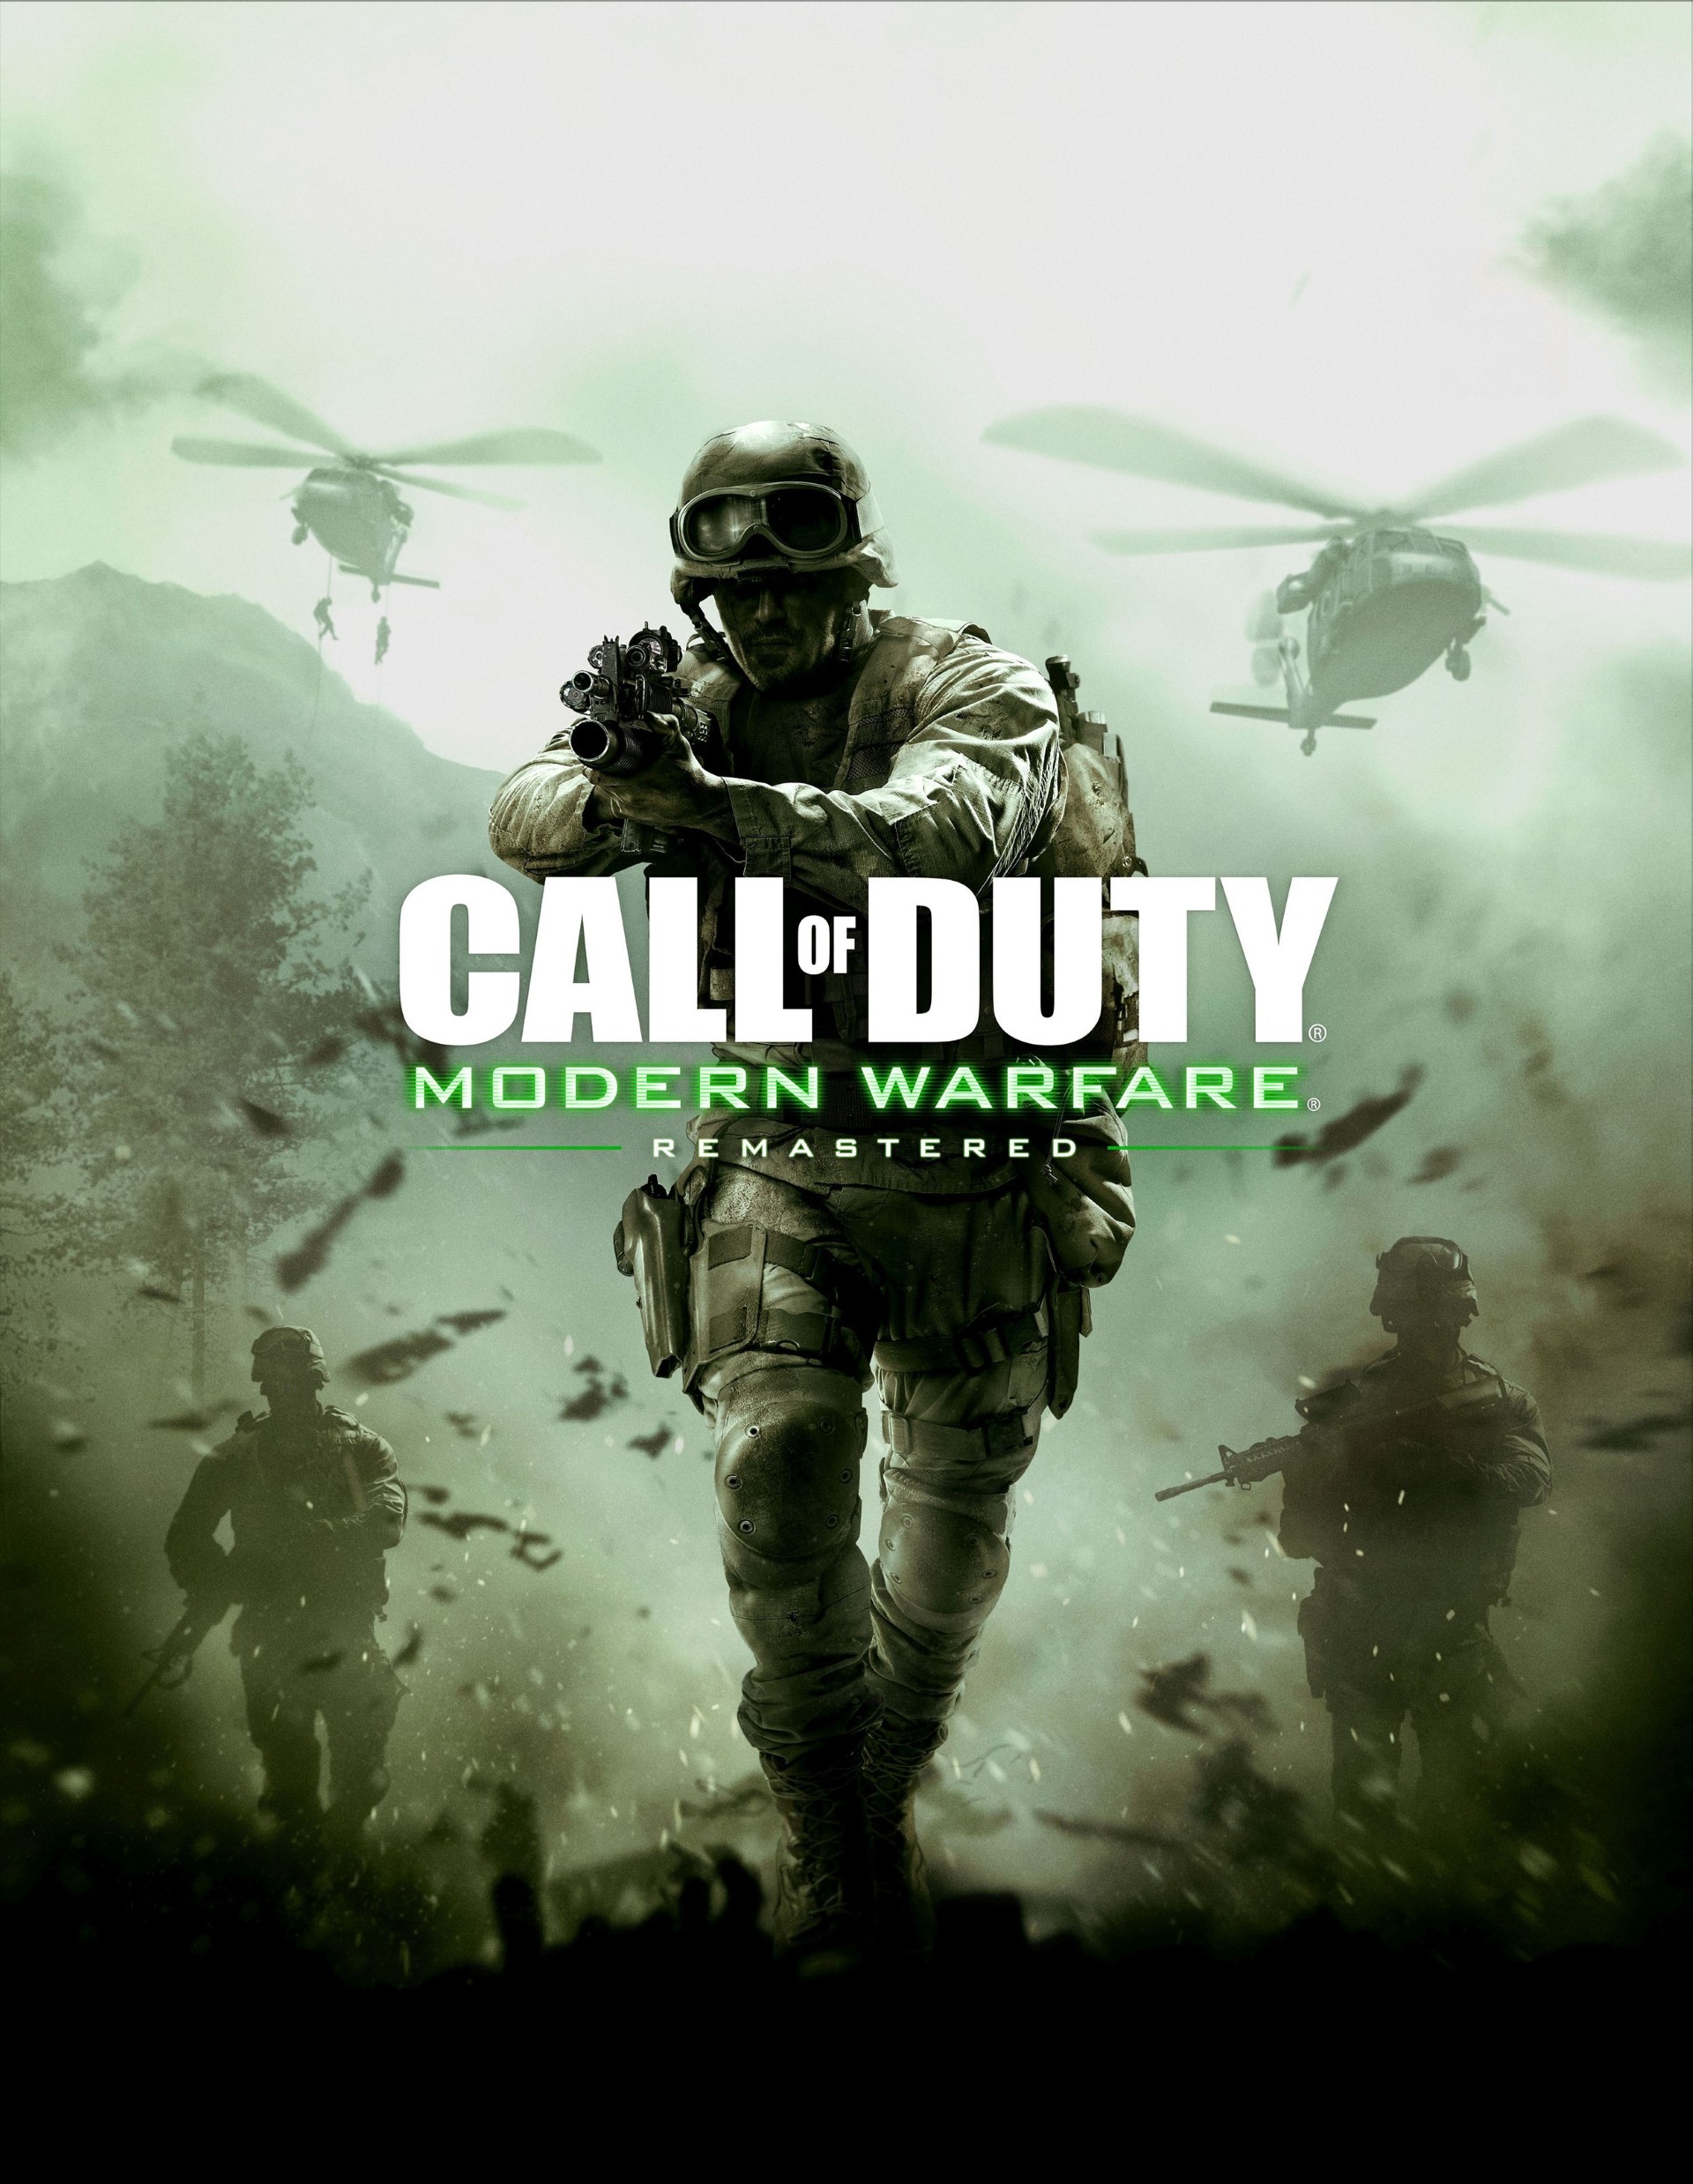 продолжаю играть в Call of Duty 4: Modern Warfare